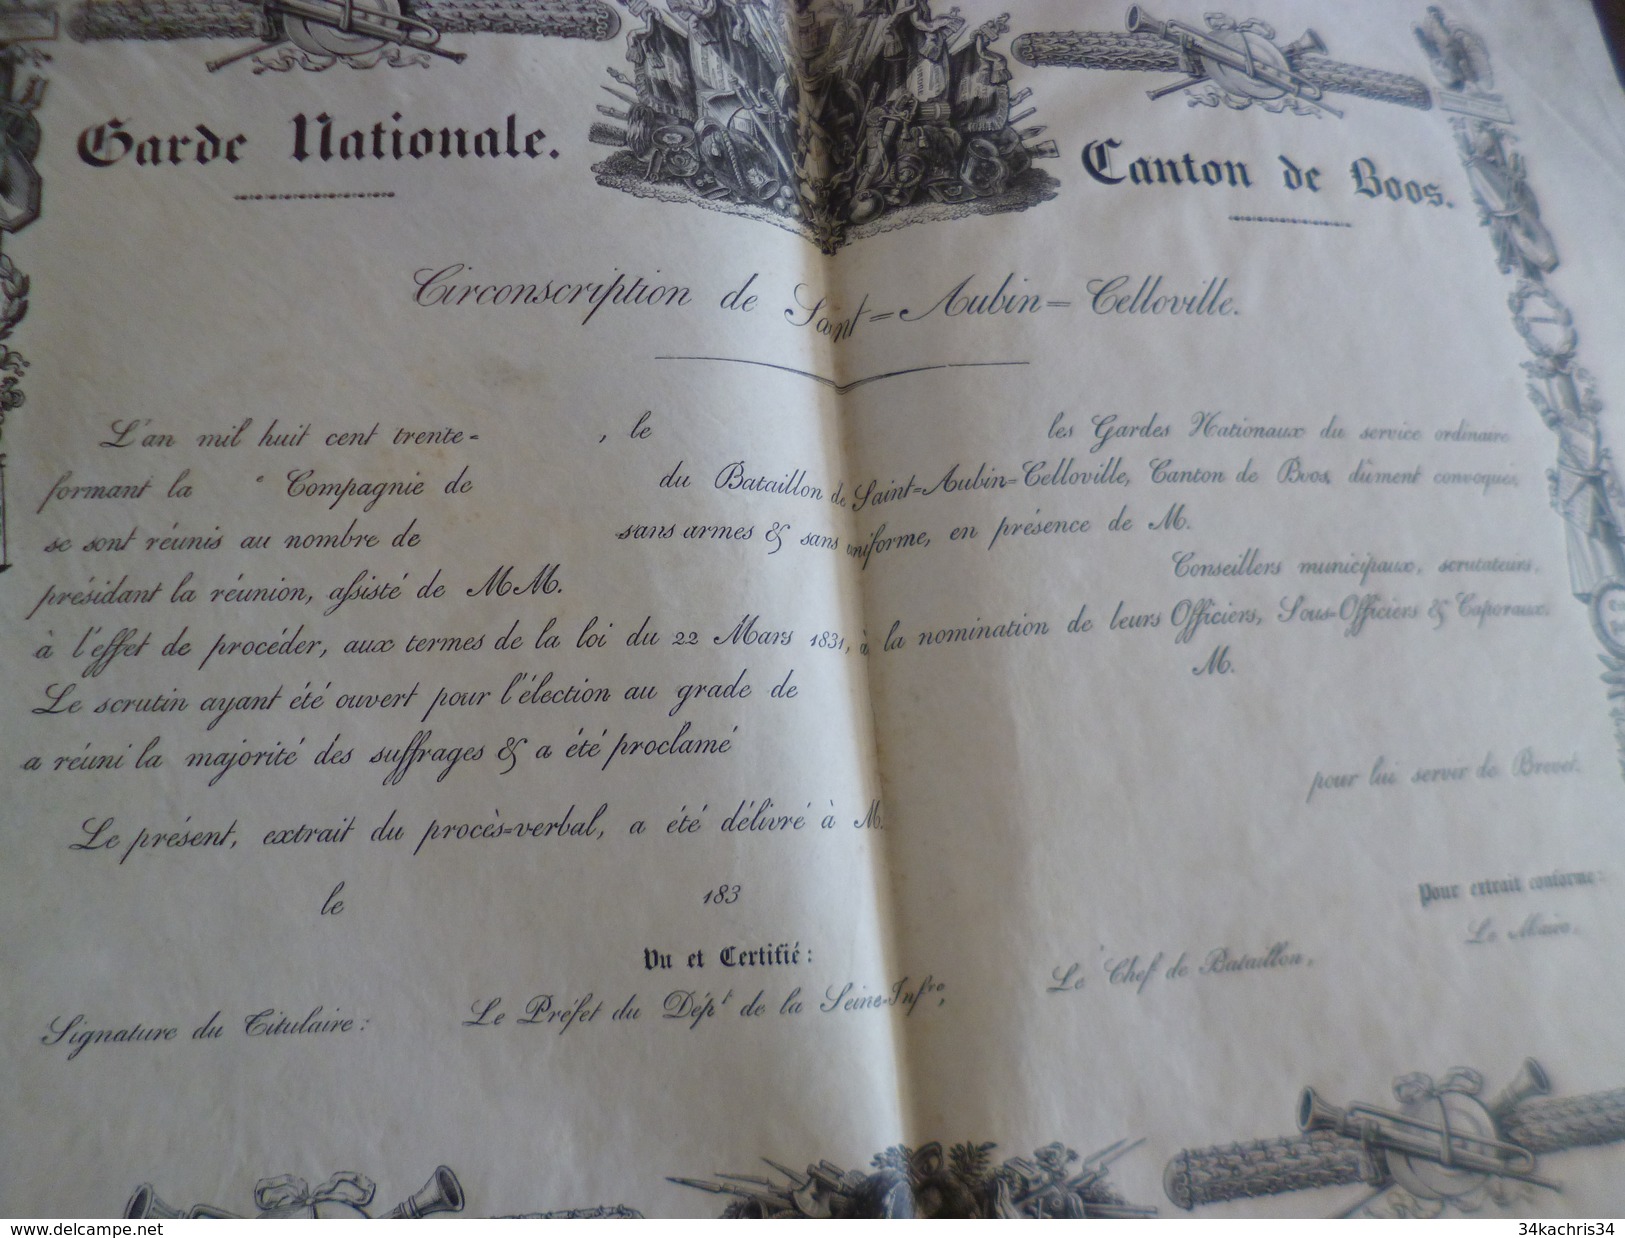 Sur Velin Rare Diplôme Vierge Illustré Garde Nationale Canton De Boos Vers 1830 France Seine Maritime  41,7 X 28.9 TBE - Diplome Und Schulzeugnisse